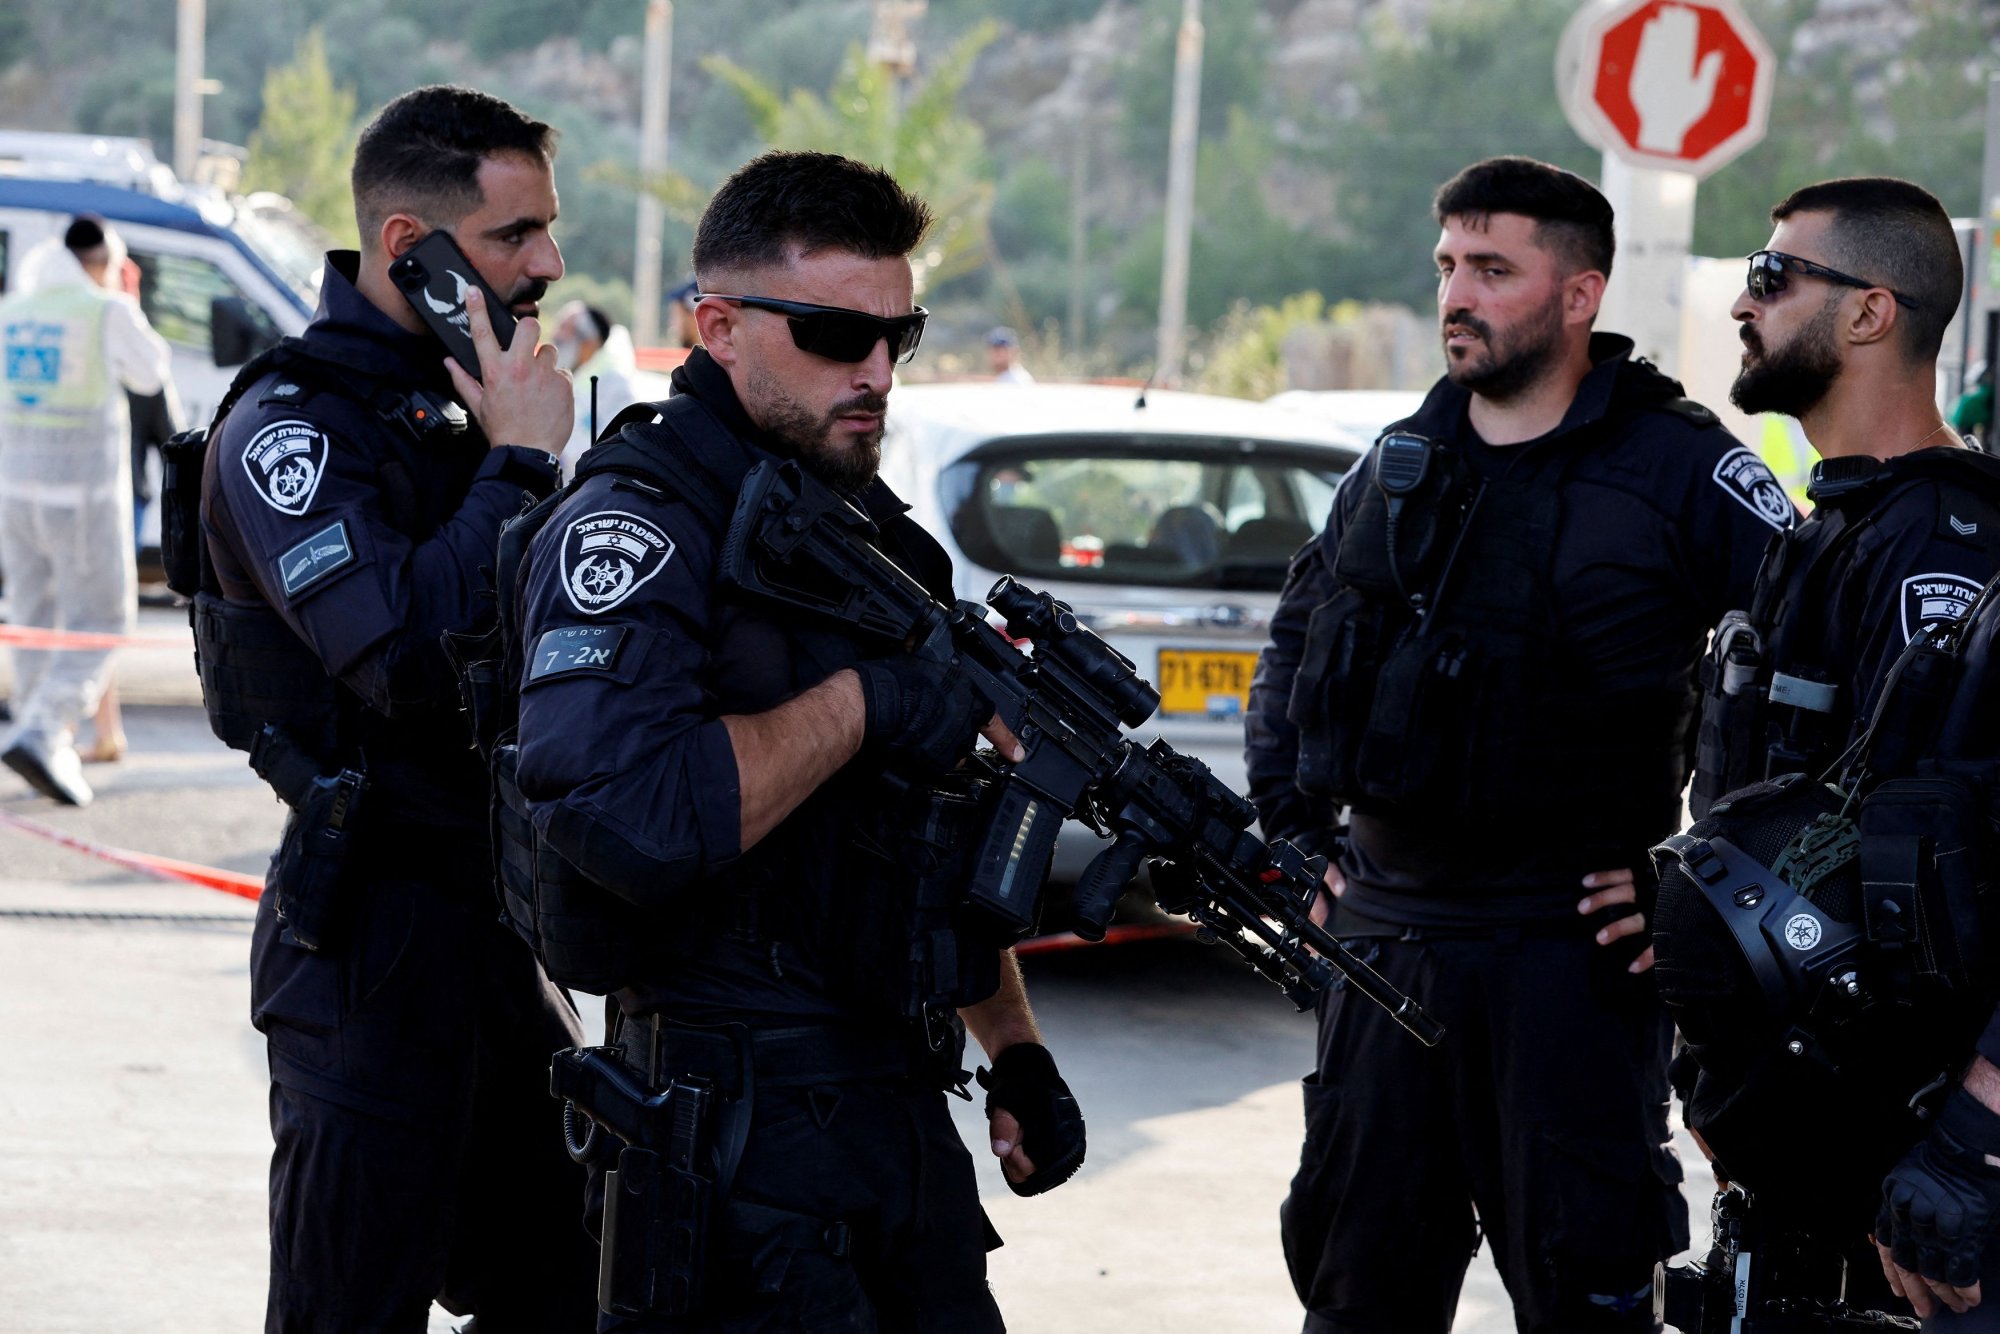 Υπόθεση τρομοκρατίας στην Κύπρο - Συνελήφθησαν δύο Ιρανοί που σχεδίαζαν επιθέσεις κατά Εβραίων και Ισραηλινών